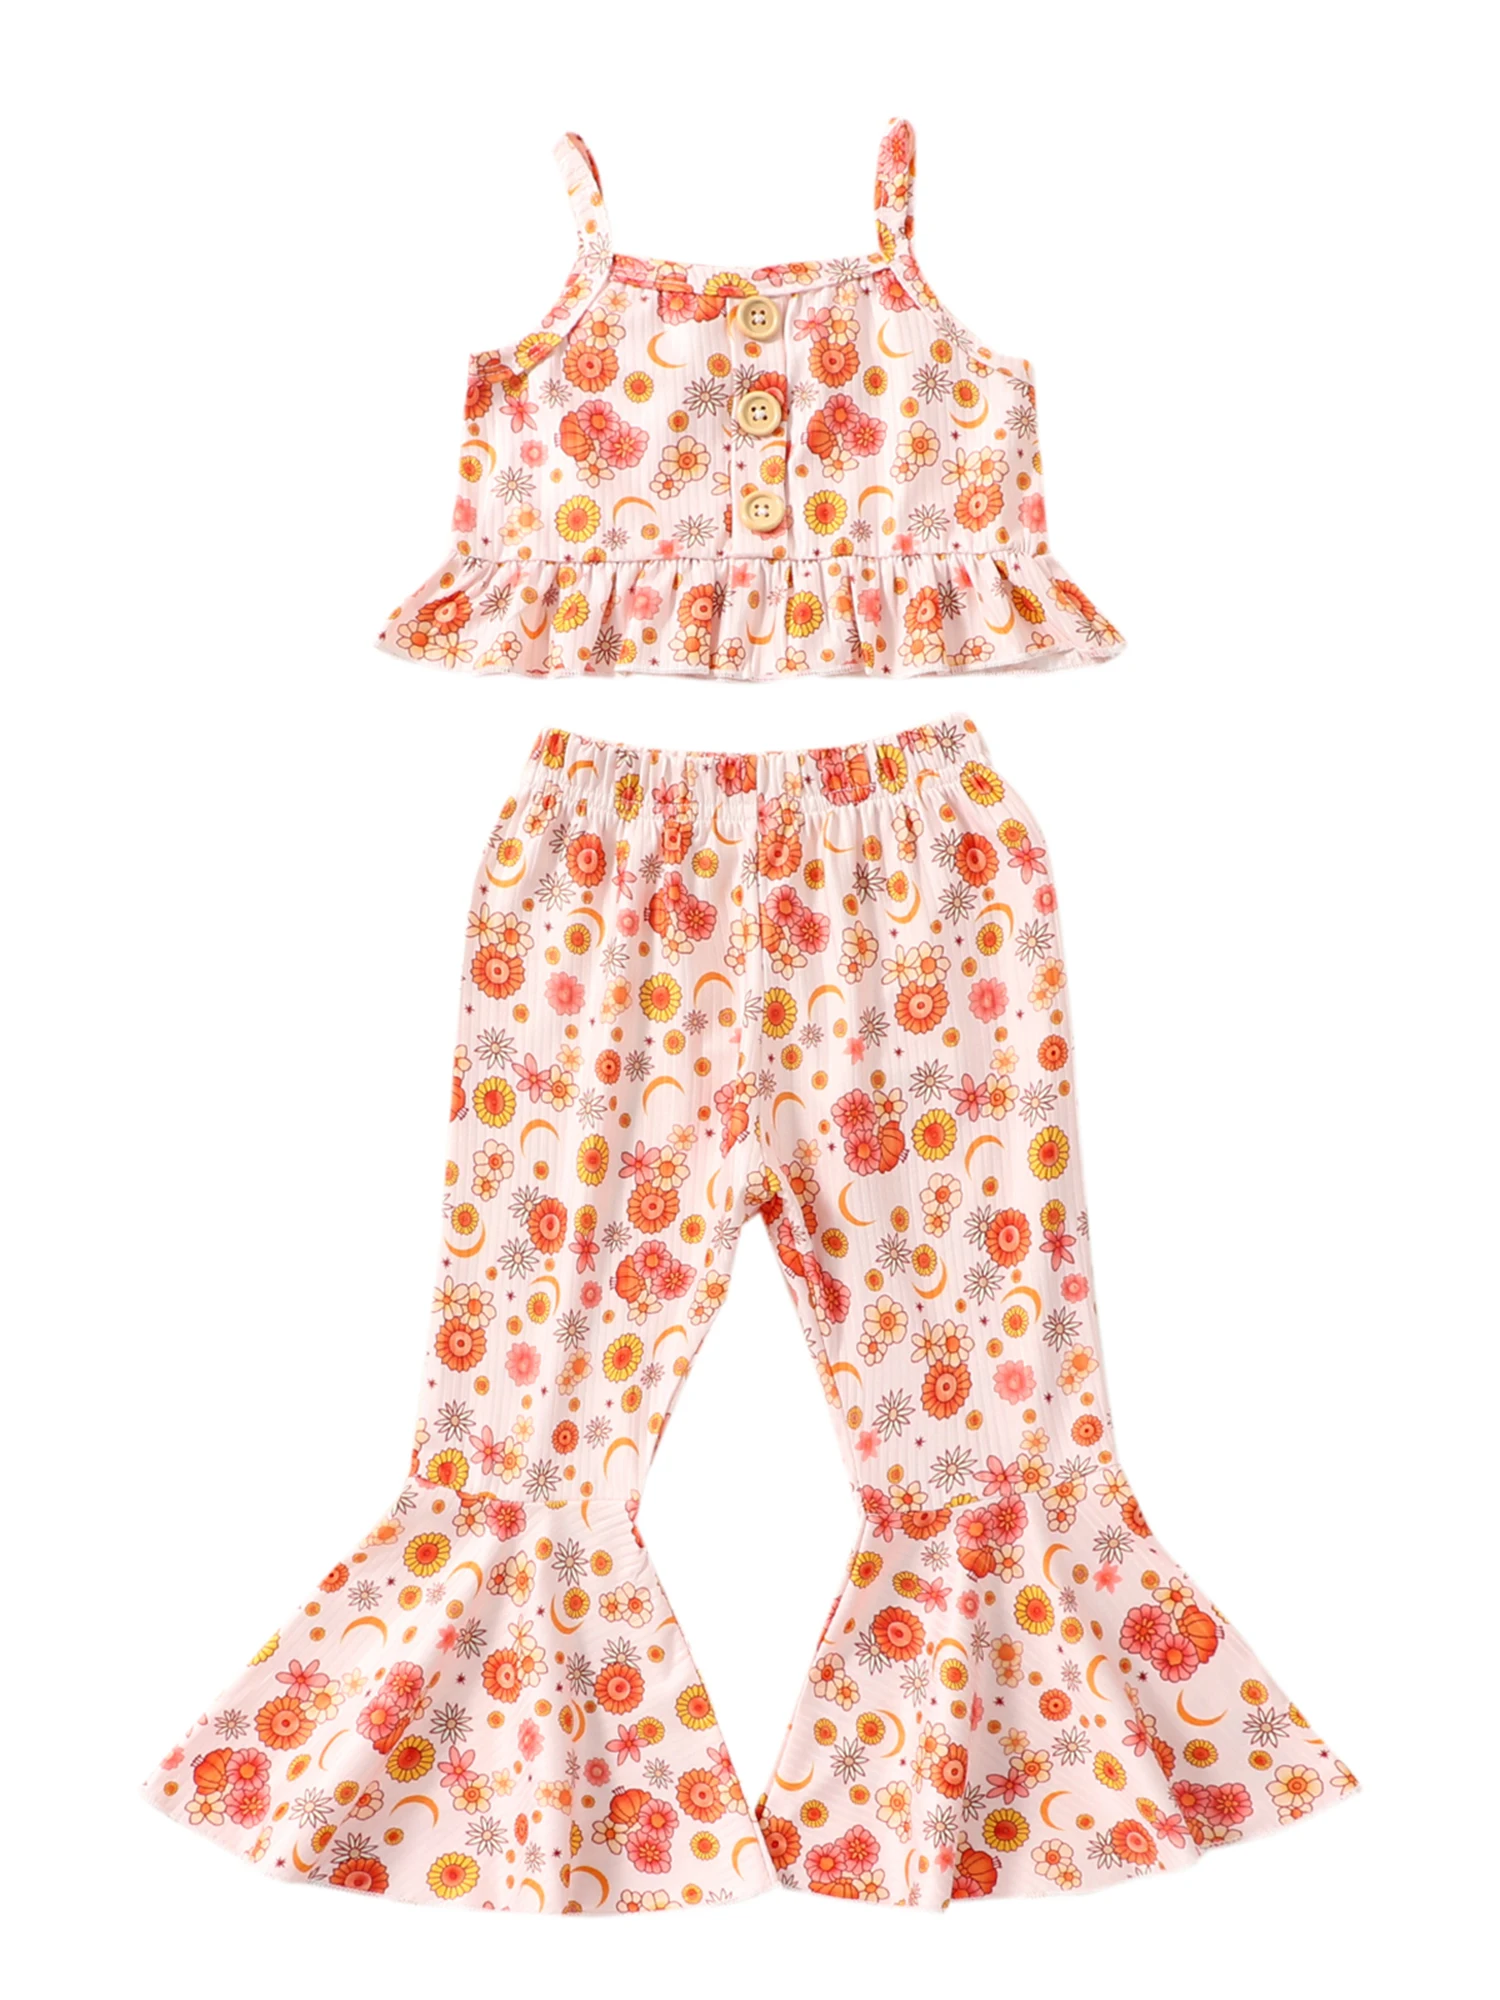 

Jkerther летний повседневный наряд для маленьких девочек, цветочный кружевной короткий топ без рукавов, эластичная талия, расклешенные брюки, комплект из 2 предметов